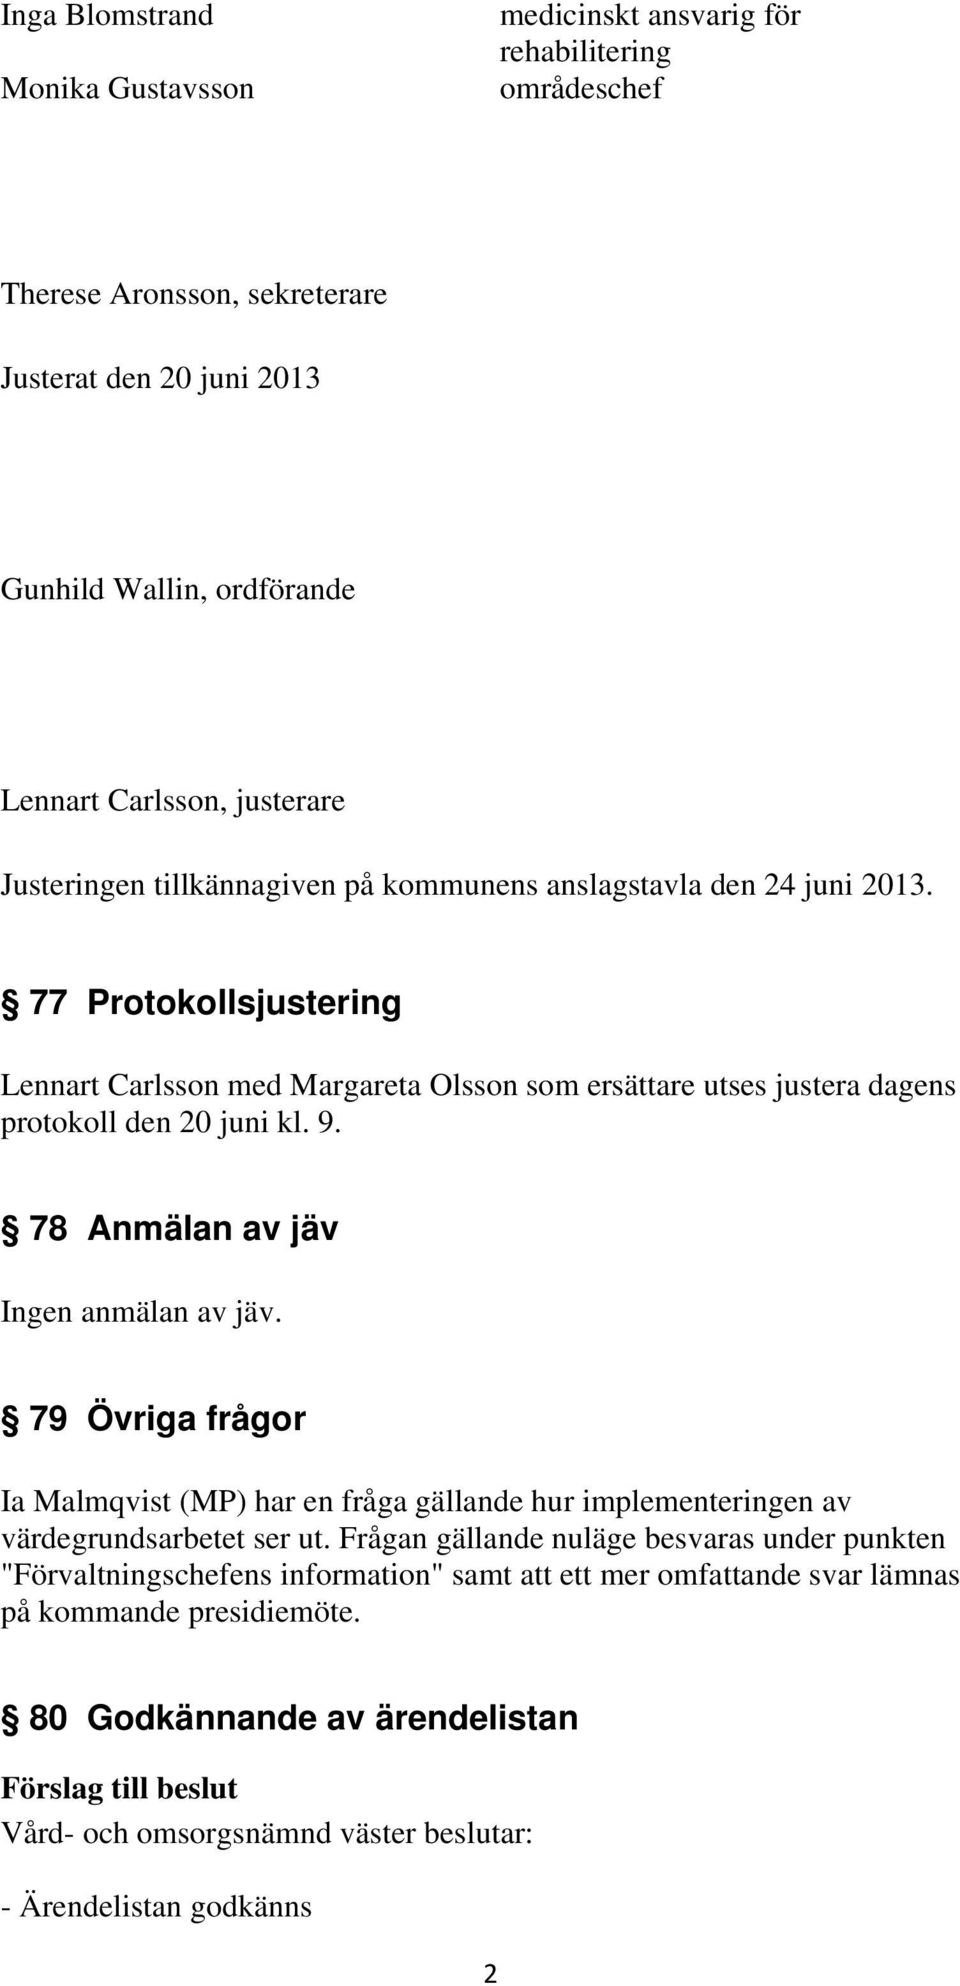 77 Protokollsjustering Lennart Carlsson med Margareta Olsson som ersättare utses justera dagens protokoll den 20 juni kl. 9. 78 Anmälan av jäv Ingen anmälan av jäv.